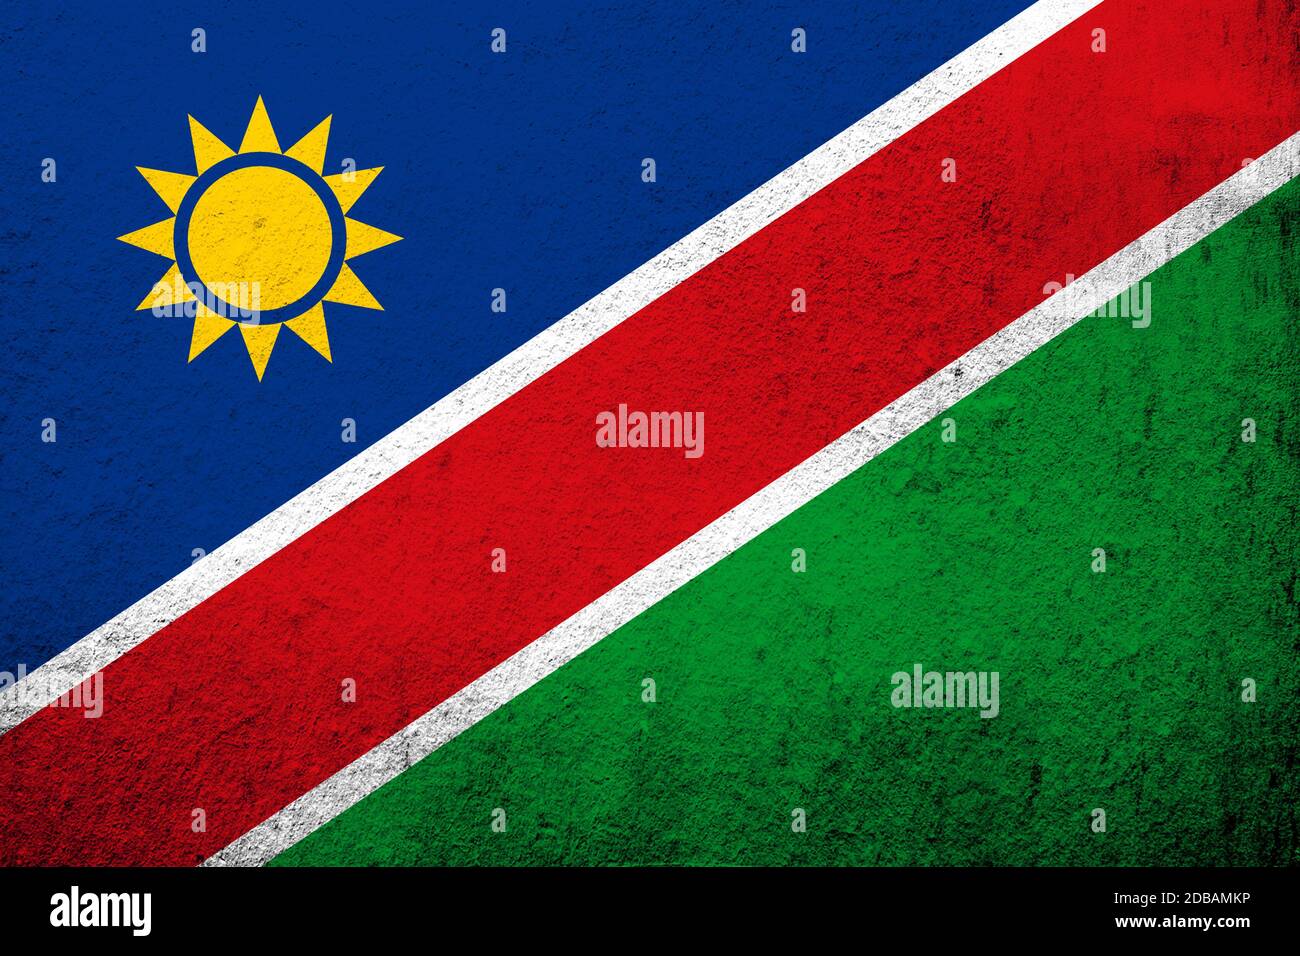 The Republic of Namibia National flag. Grunge background Stock Photo